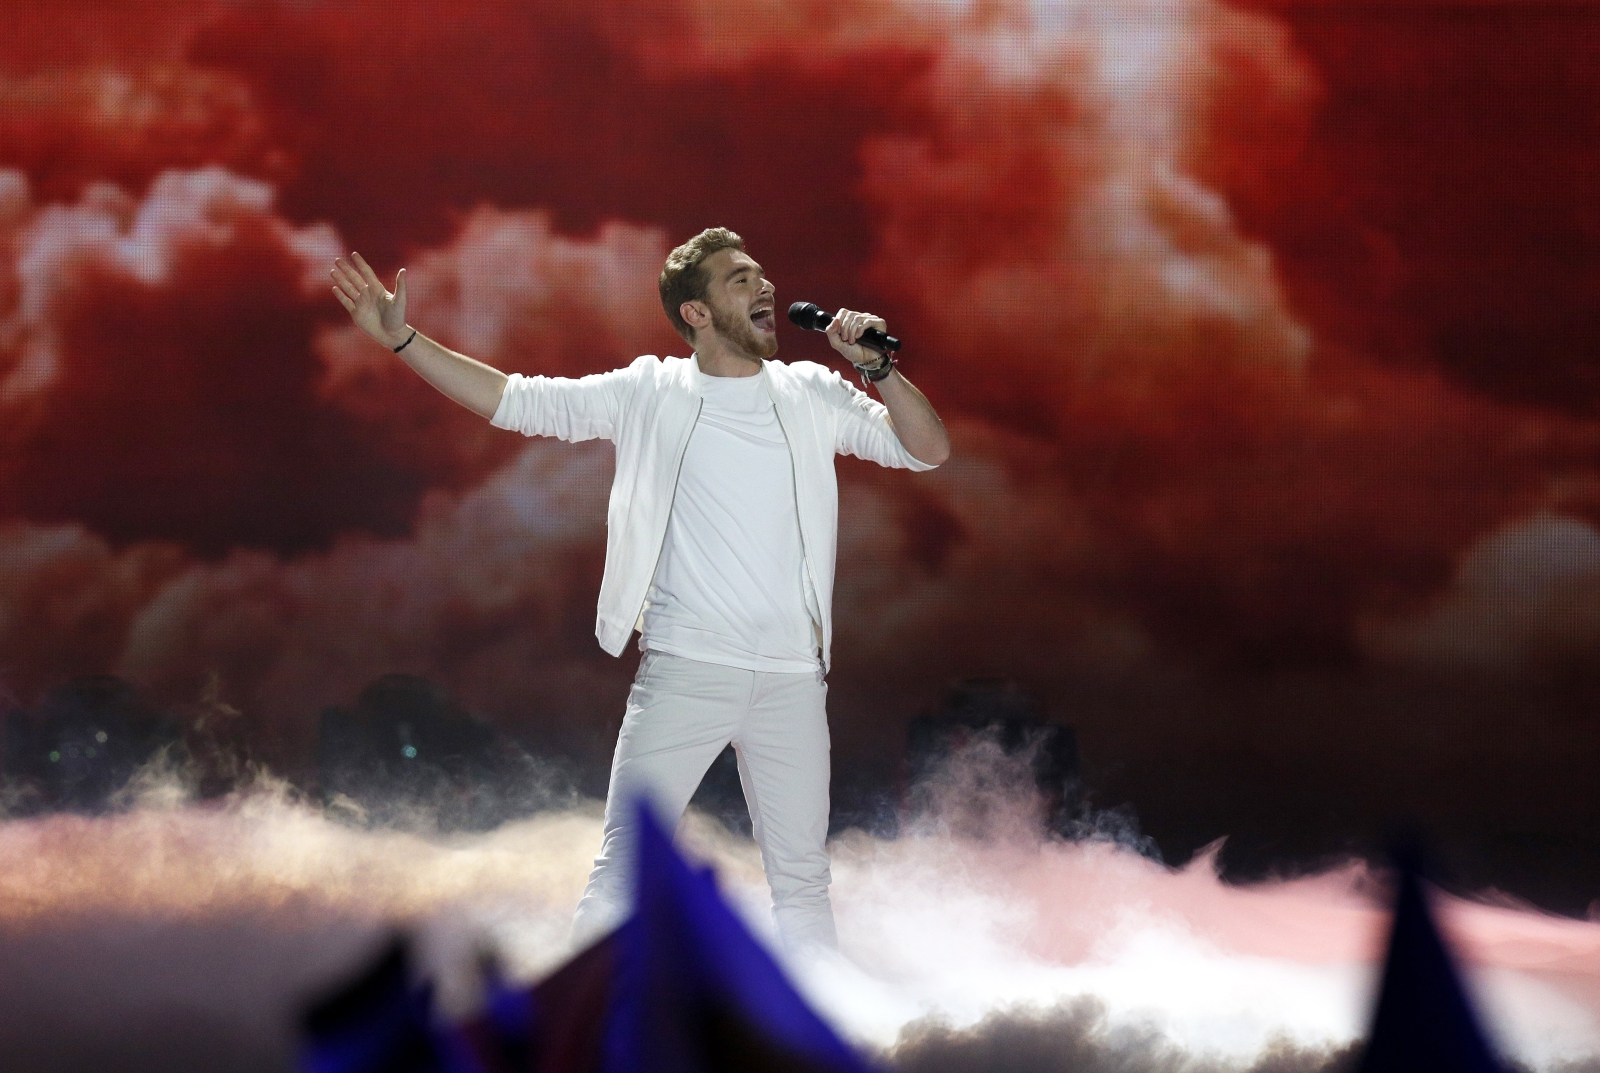 Nathan Trent z Austrii w trakcie finału Eurowizji w Kijowie, Ukraina